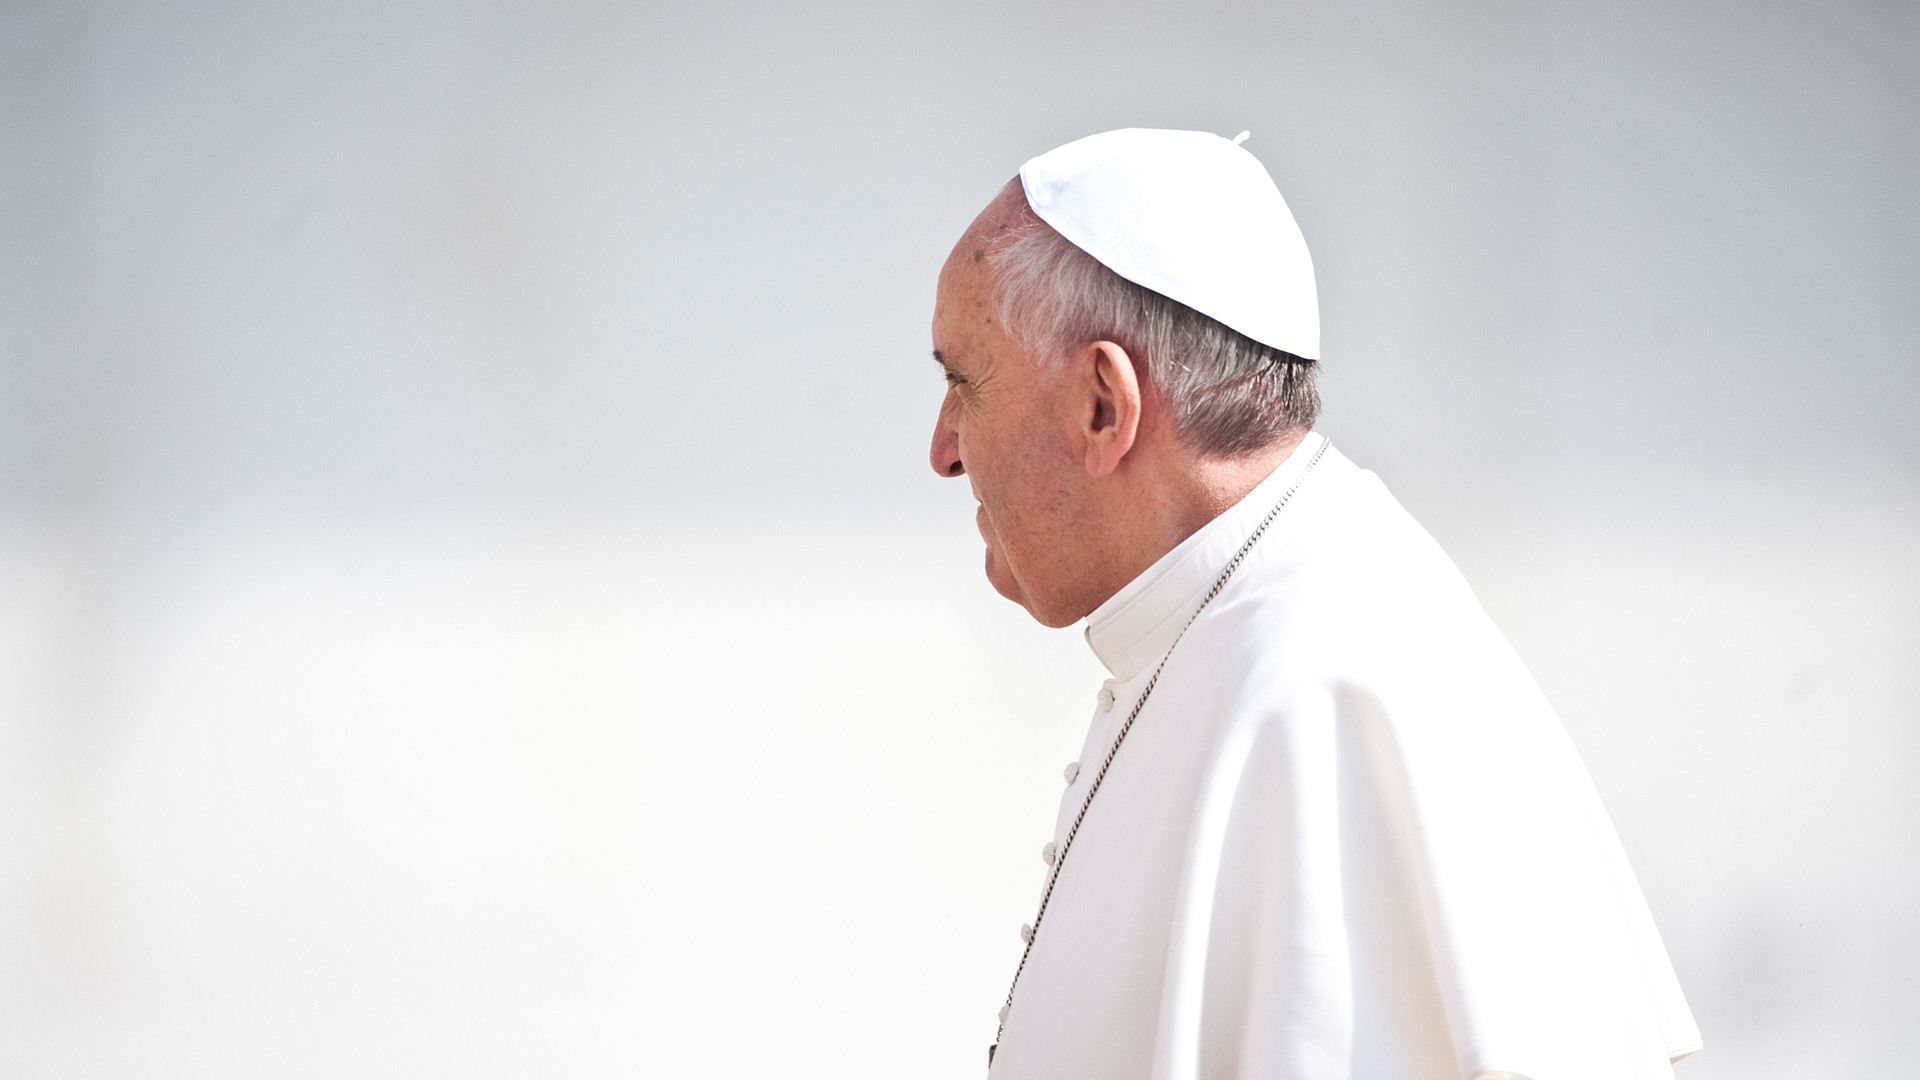 "Cacher ou nier le mal c’est comme laisser une blessure continuer à saigner sans la panser", affirmé le pape (Photo: flickr/catholicism/CC BY-NC-SA 2.0)